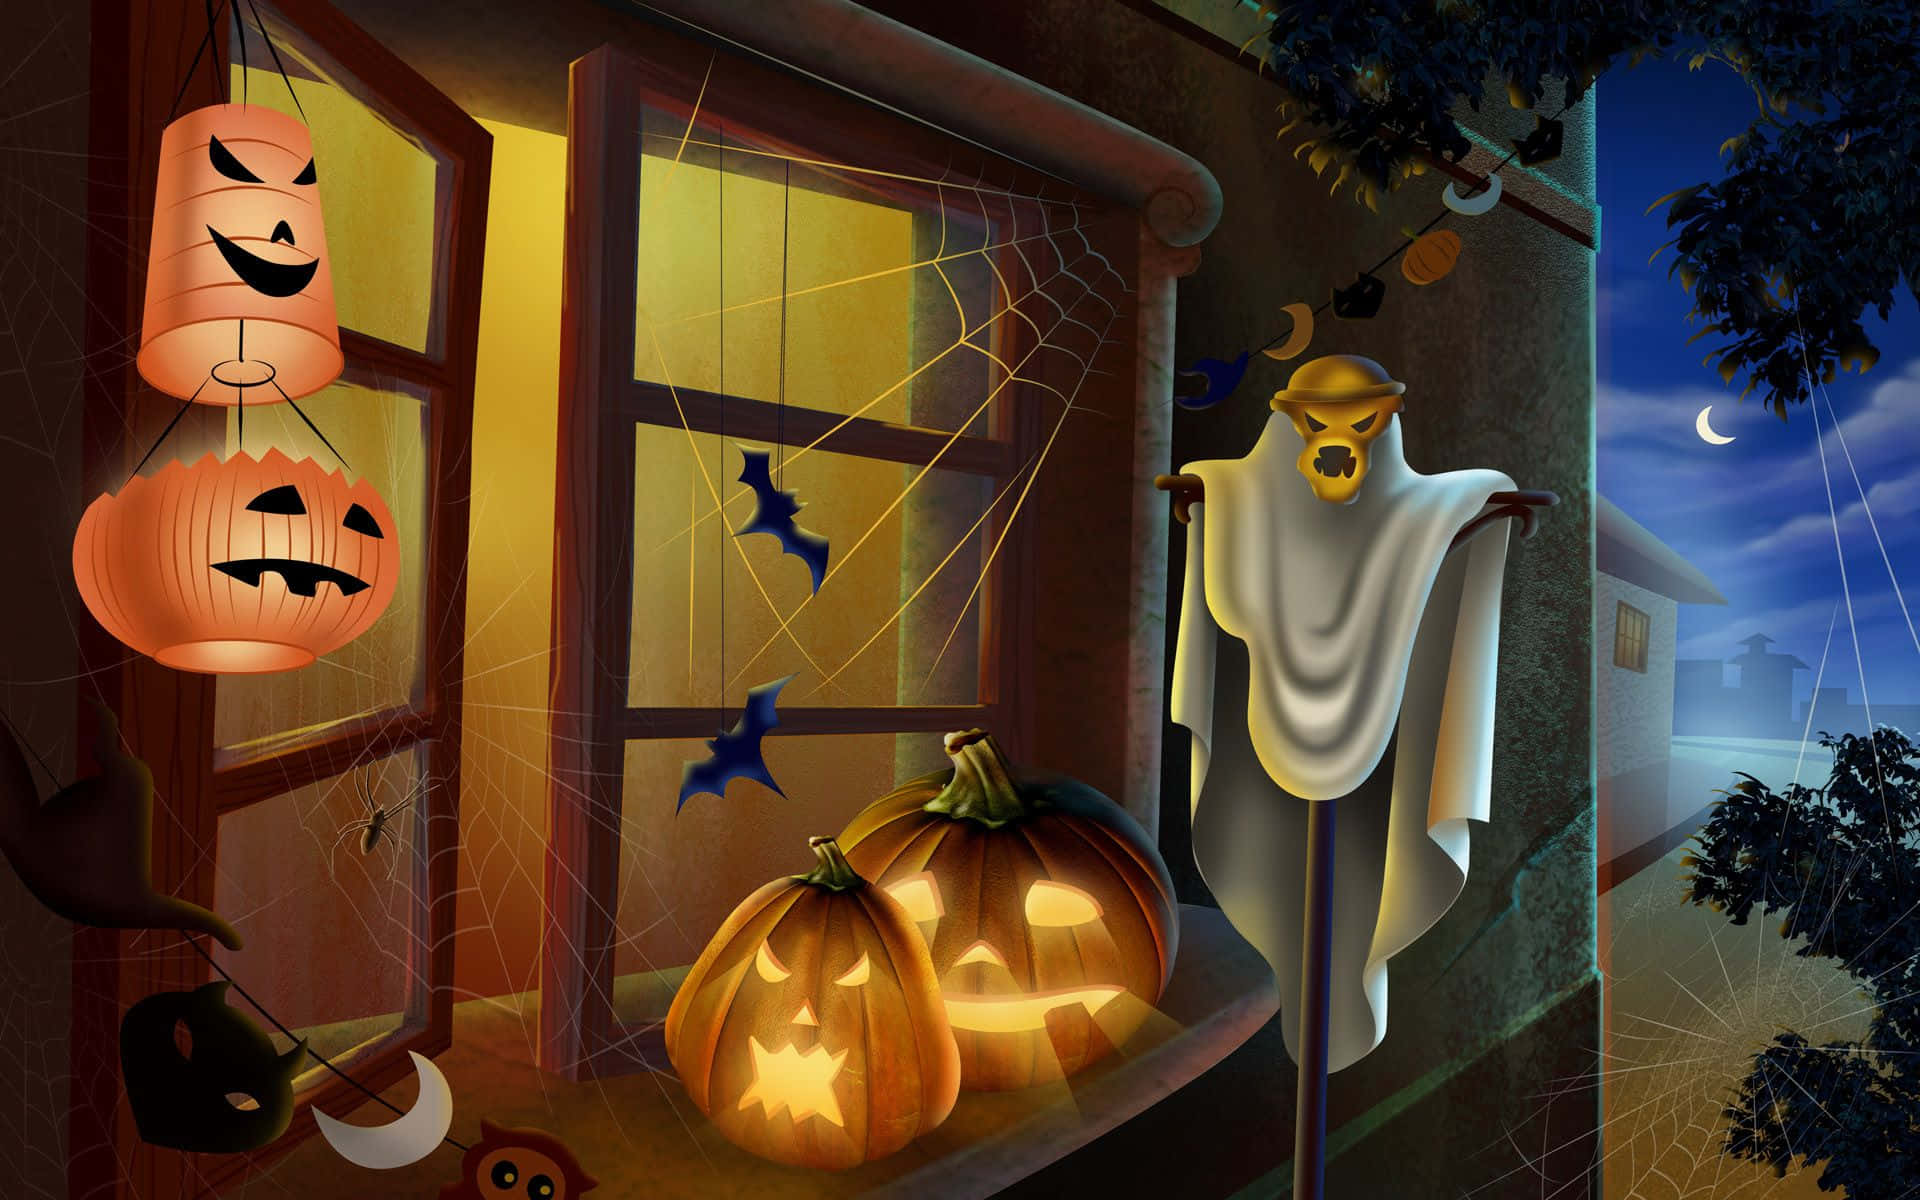 Download Scary Halloween Desktop Wallpaper | Wallpapers.com